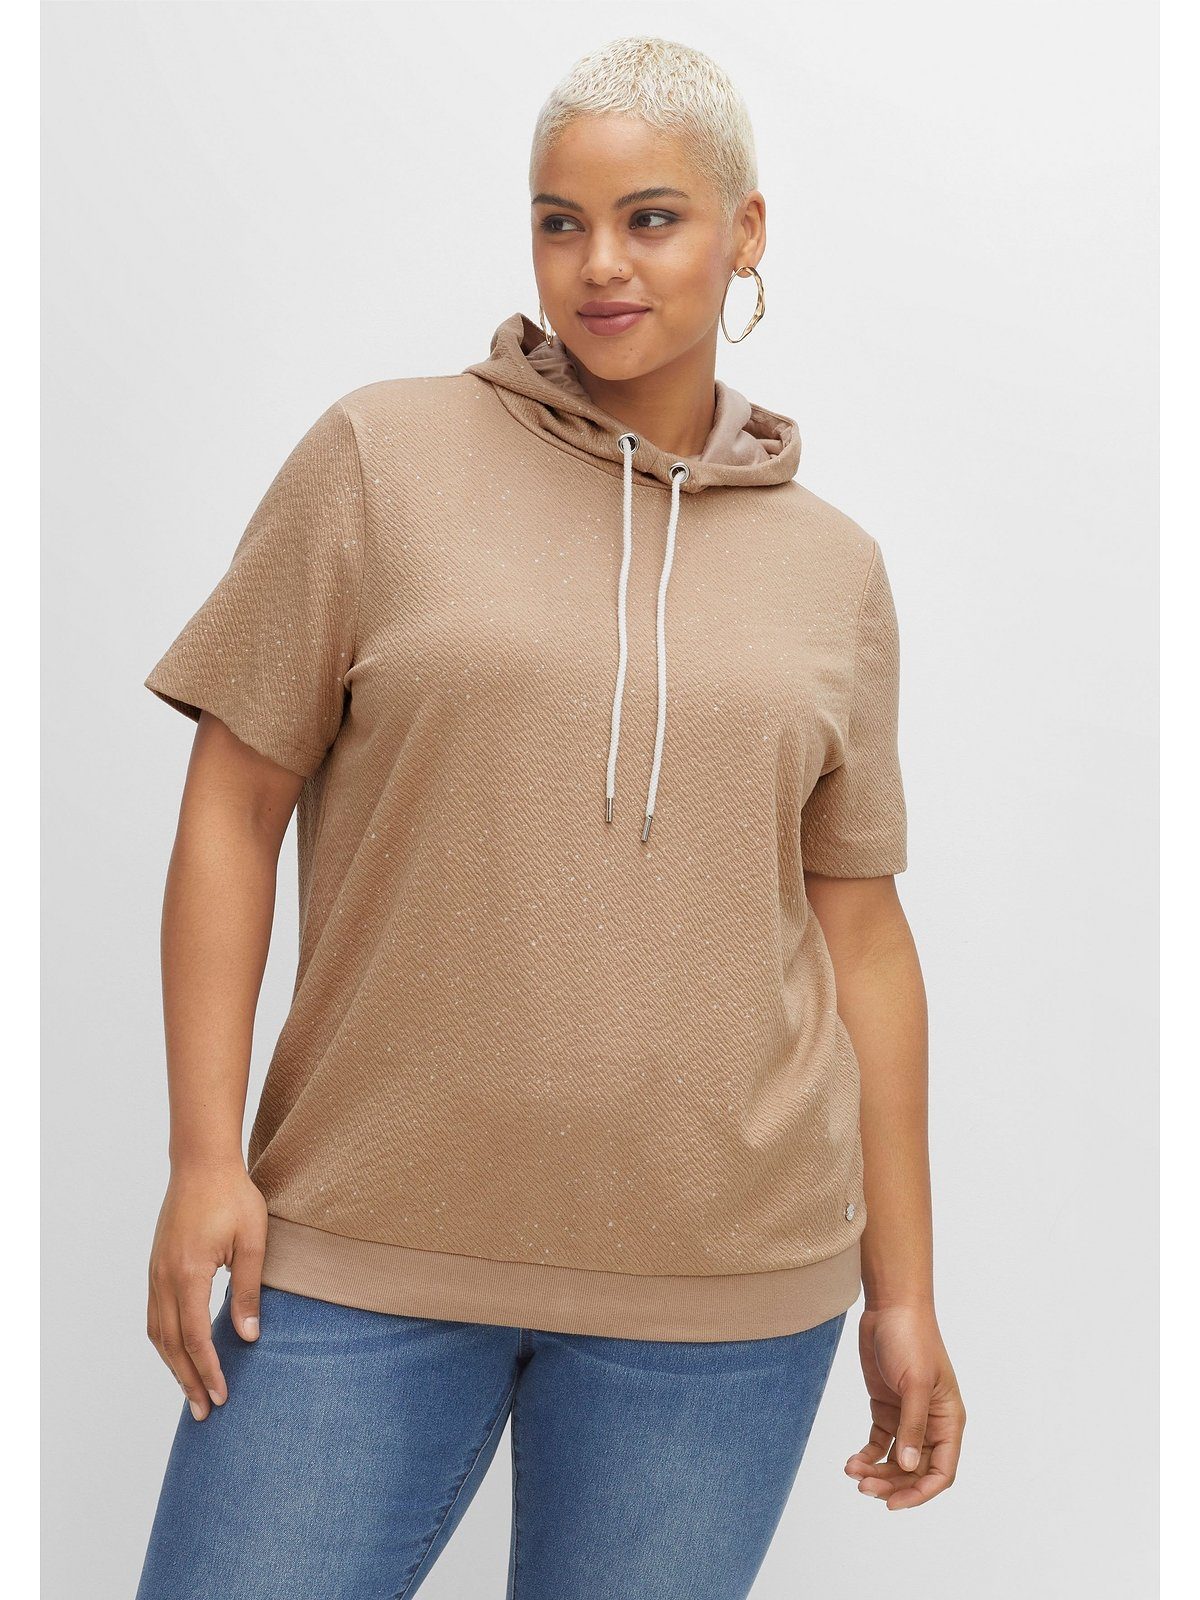 Sheego T-Shirt Große Größen aus cappuccino leichter mit meliert Kapuze Sweatware